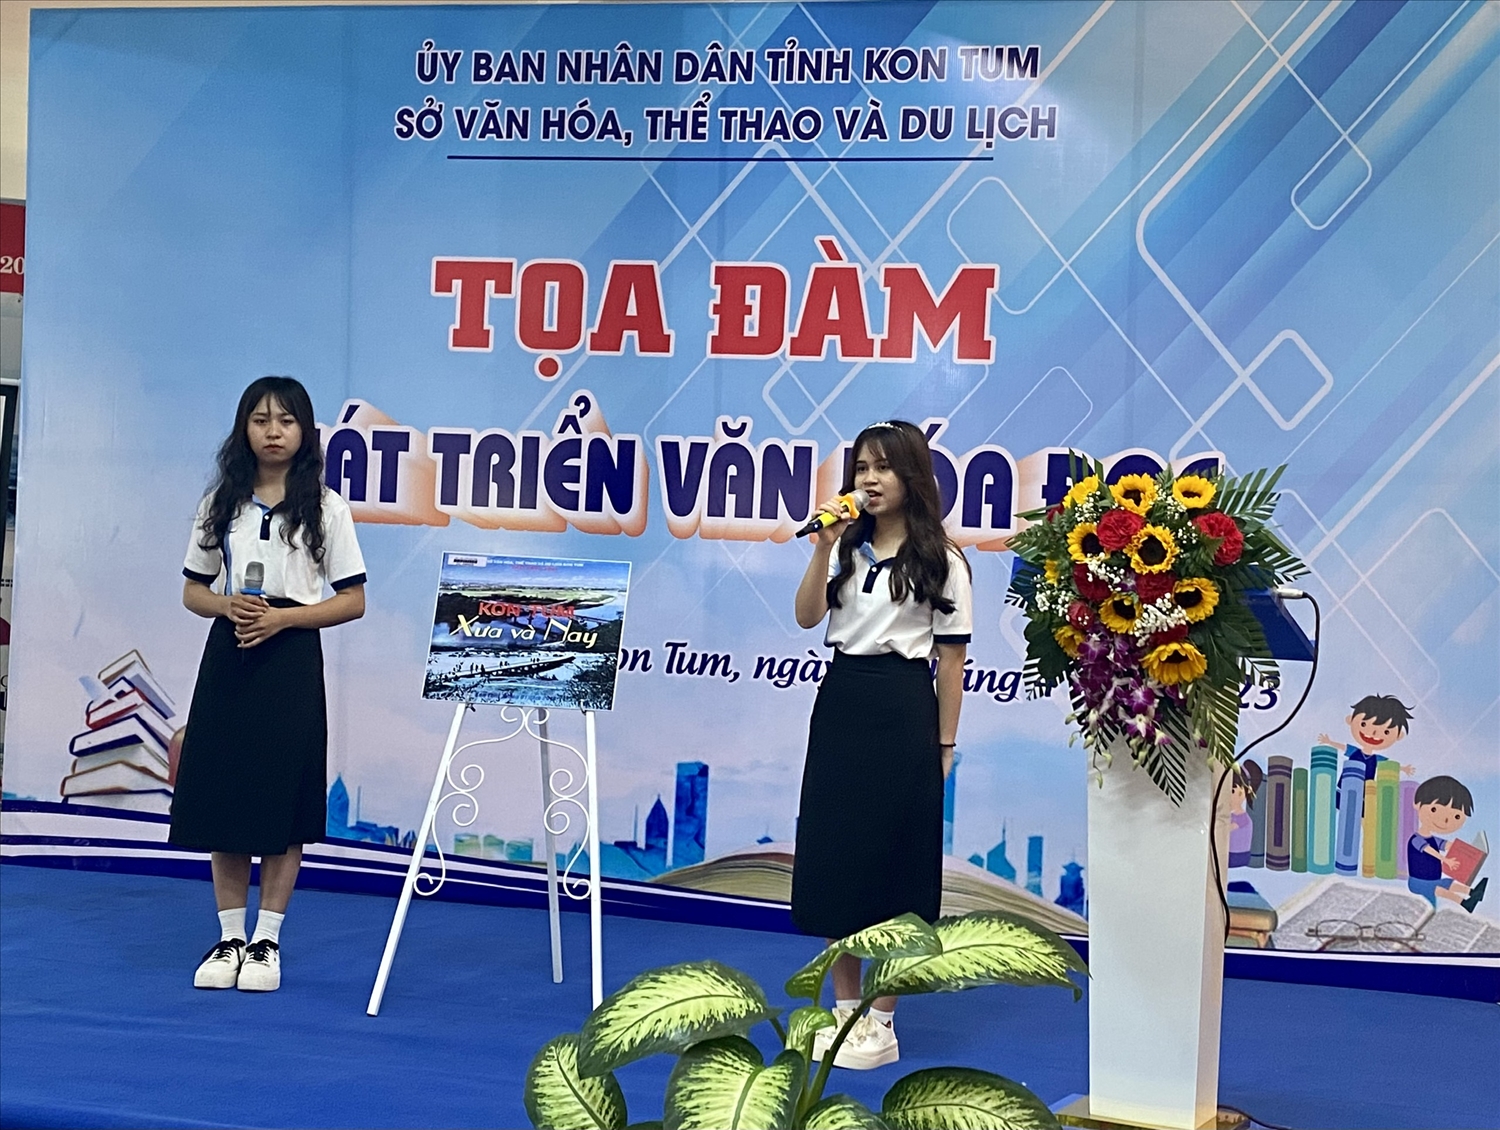 :Em Thu Sương và em Ngọc Dương, sinh viên Phân hiệu Đại học Đà Nẵng tại Kon Tum giới thiệu cuốn sách “Kon Tum xưa và nay”